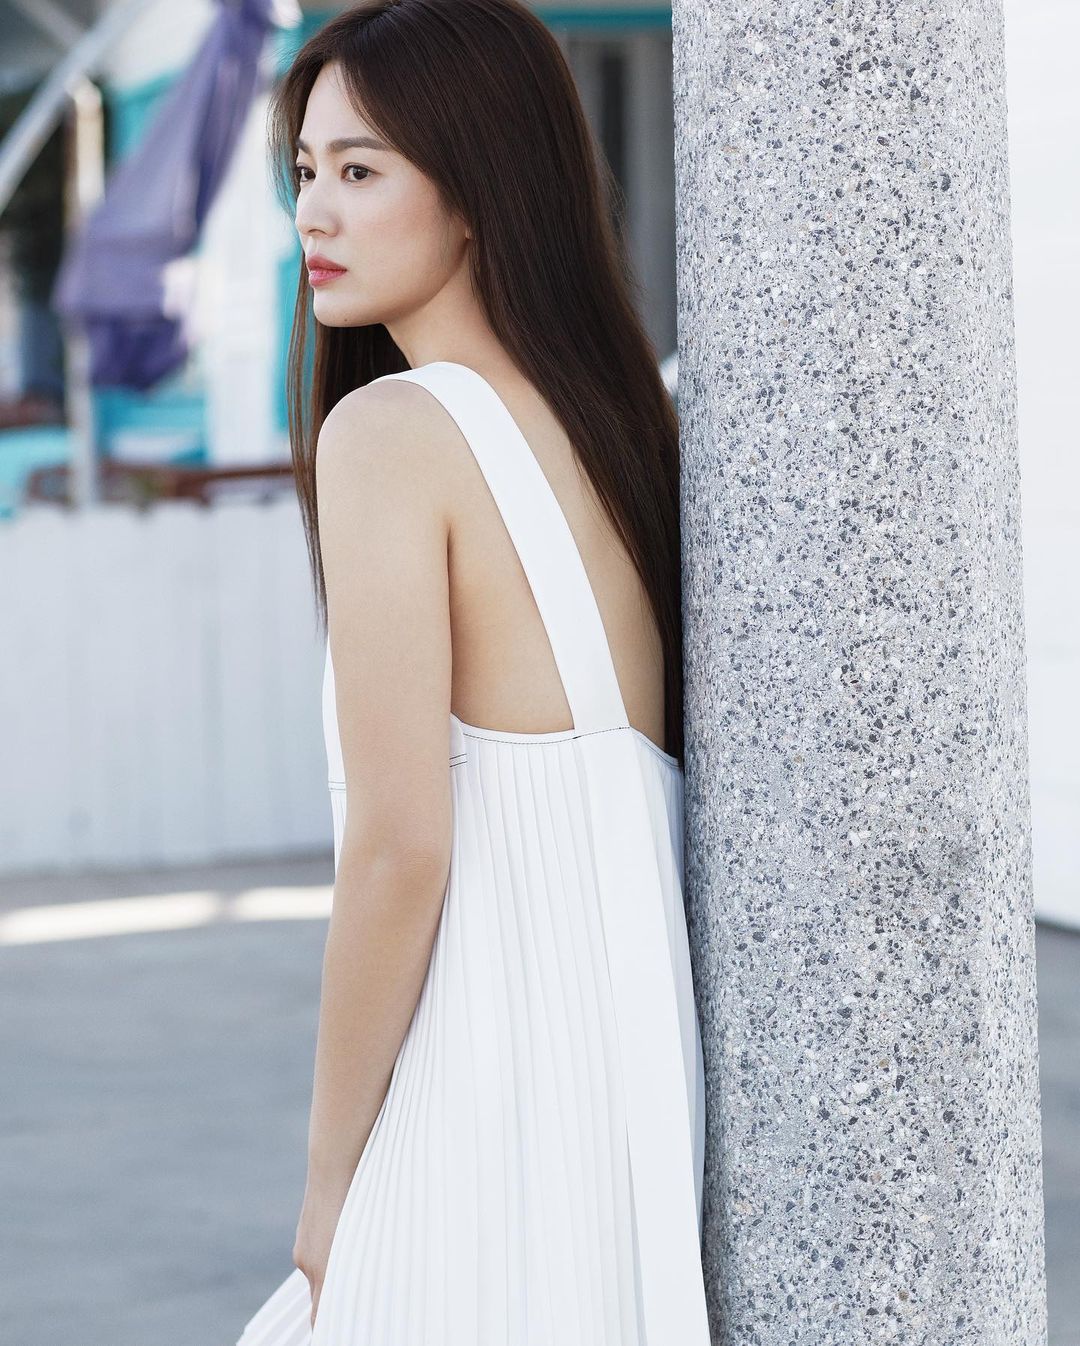 6 kiểu tóc xuất sắc nhất của Song Hye Kyo, chị em U30 'đu' theo thì nhan sắc dễ thăng hạng trong nháy mắt - Ảnh 3